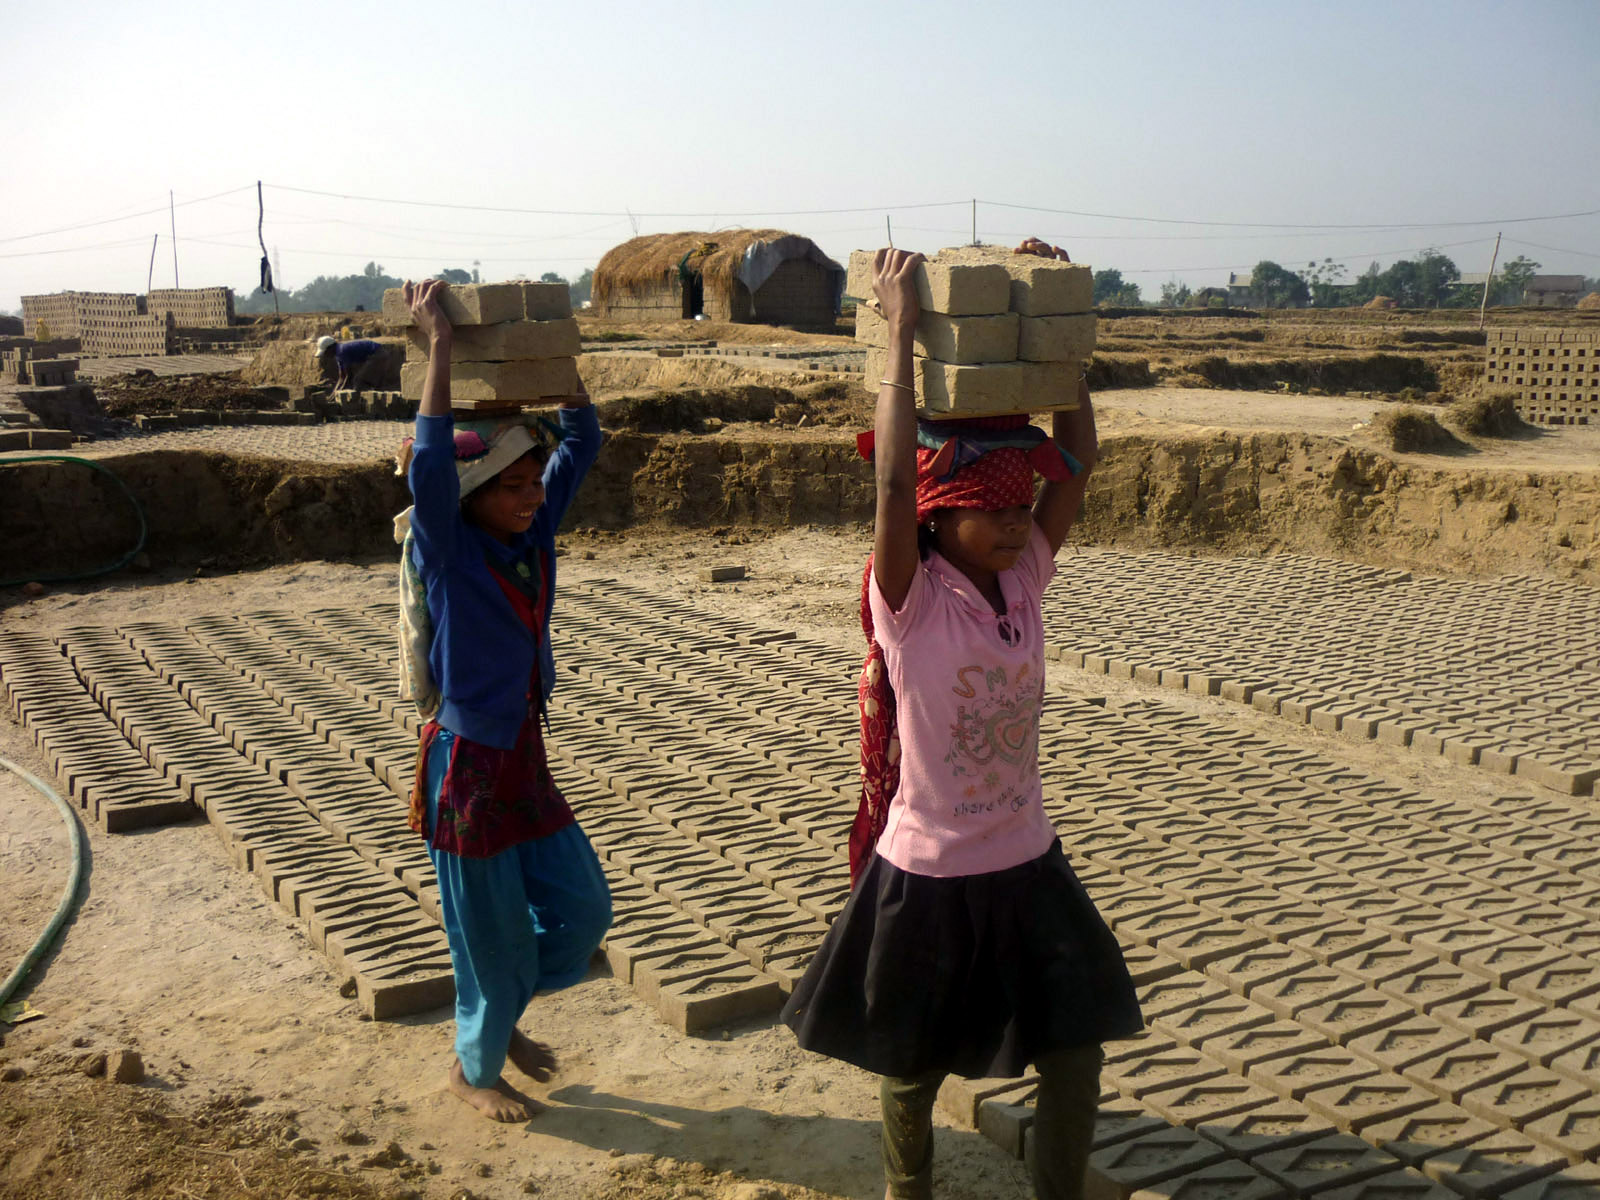 Mädchen in Nepal arbeiten in einer Ziegelei.